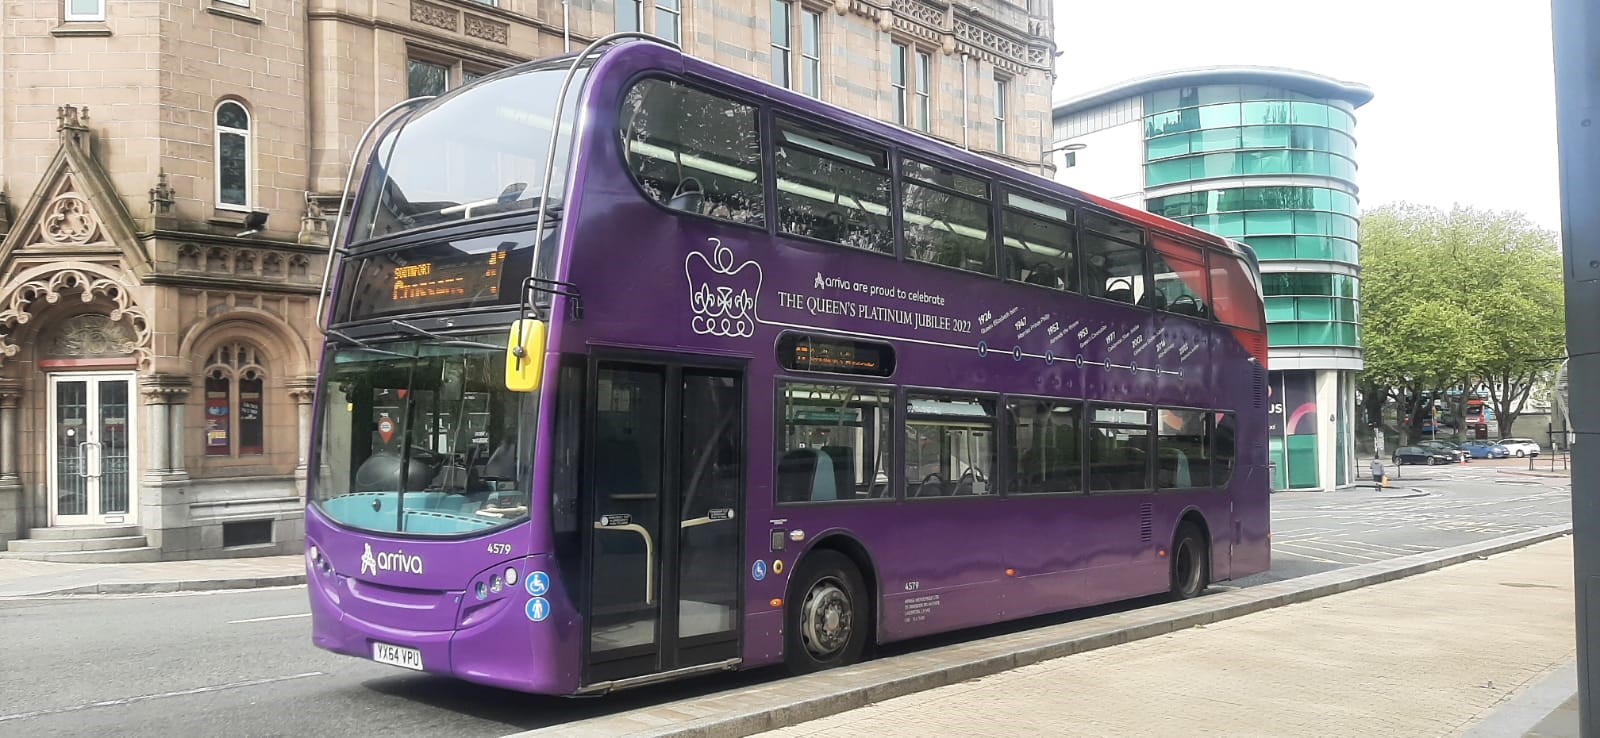 arriva bus in purple jubilee livery in liverpool